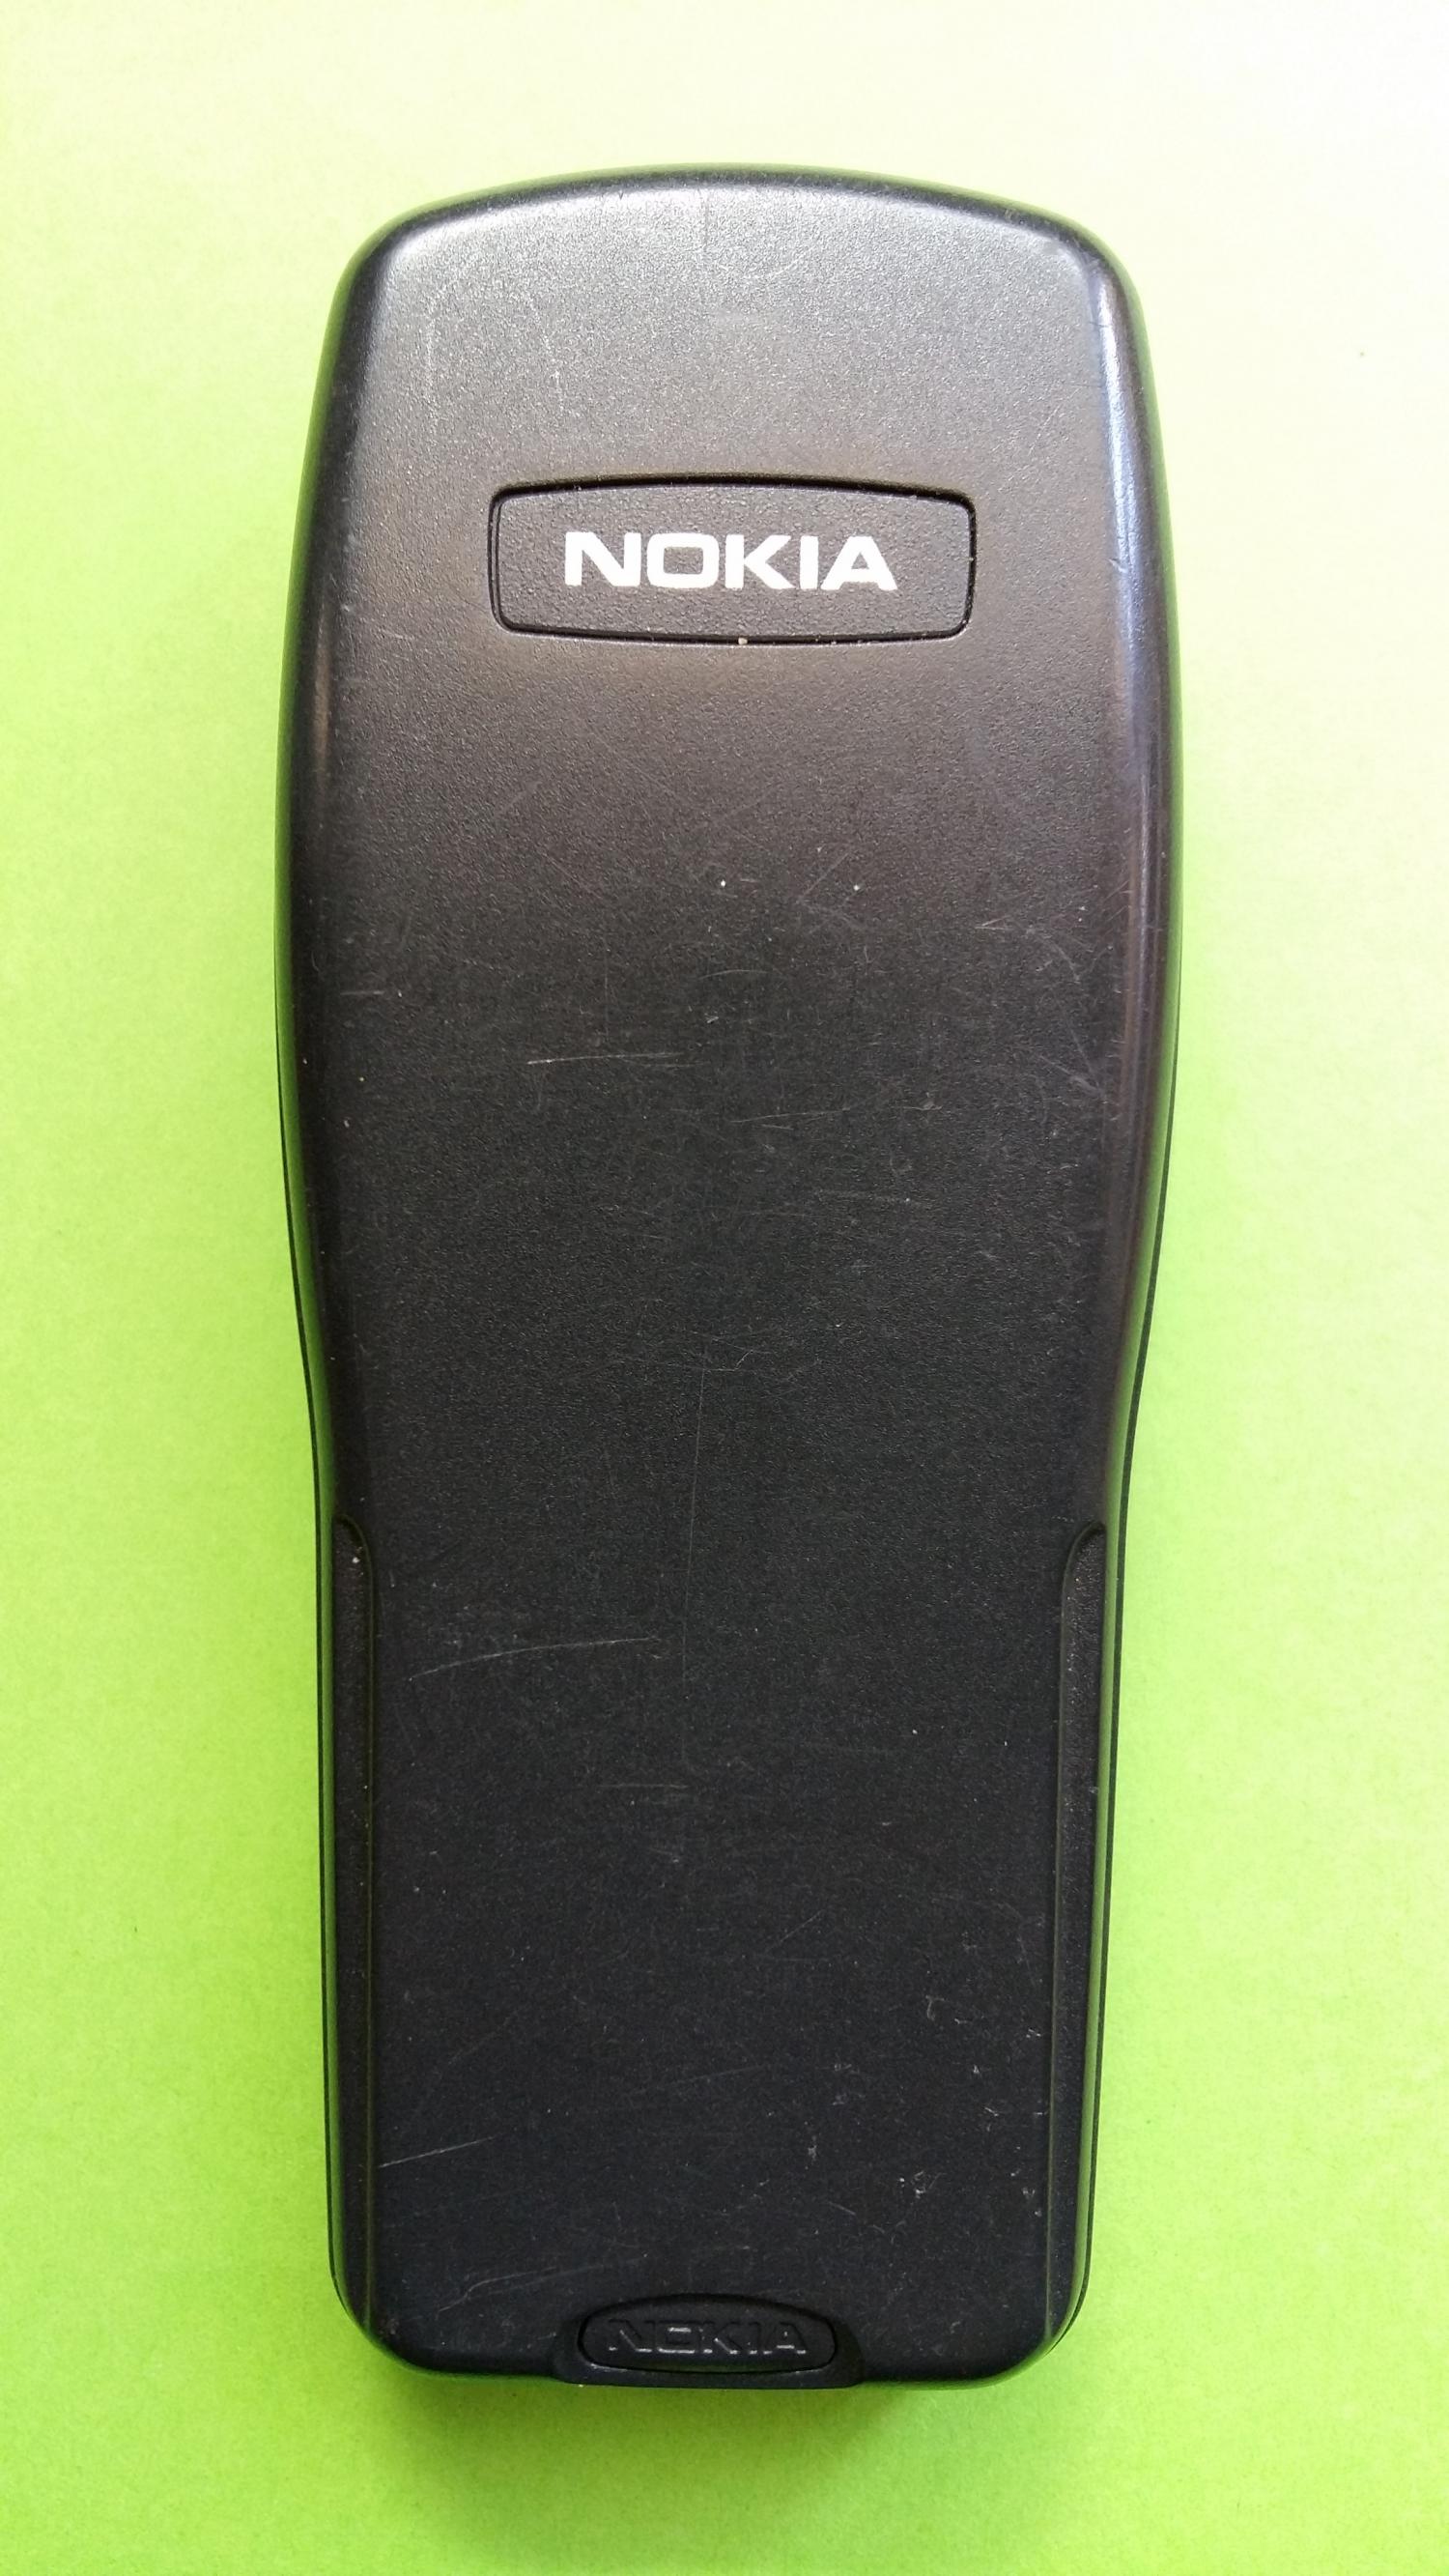 image-7305530-Nokia 3210 (2)2.jpg